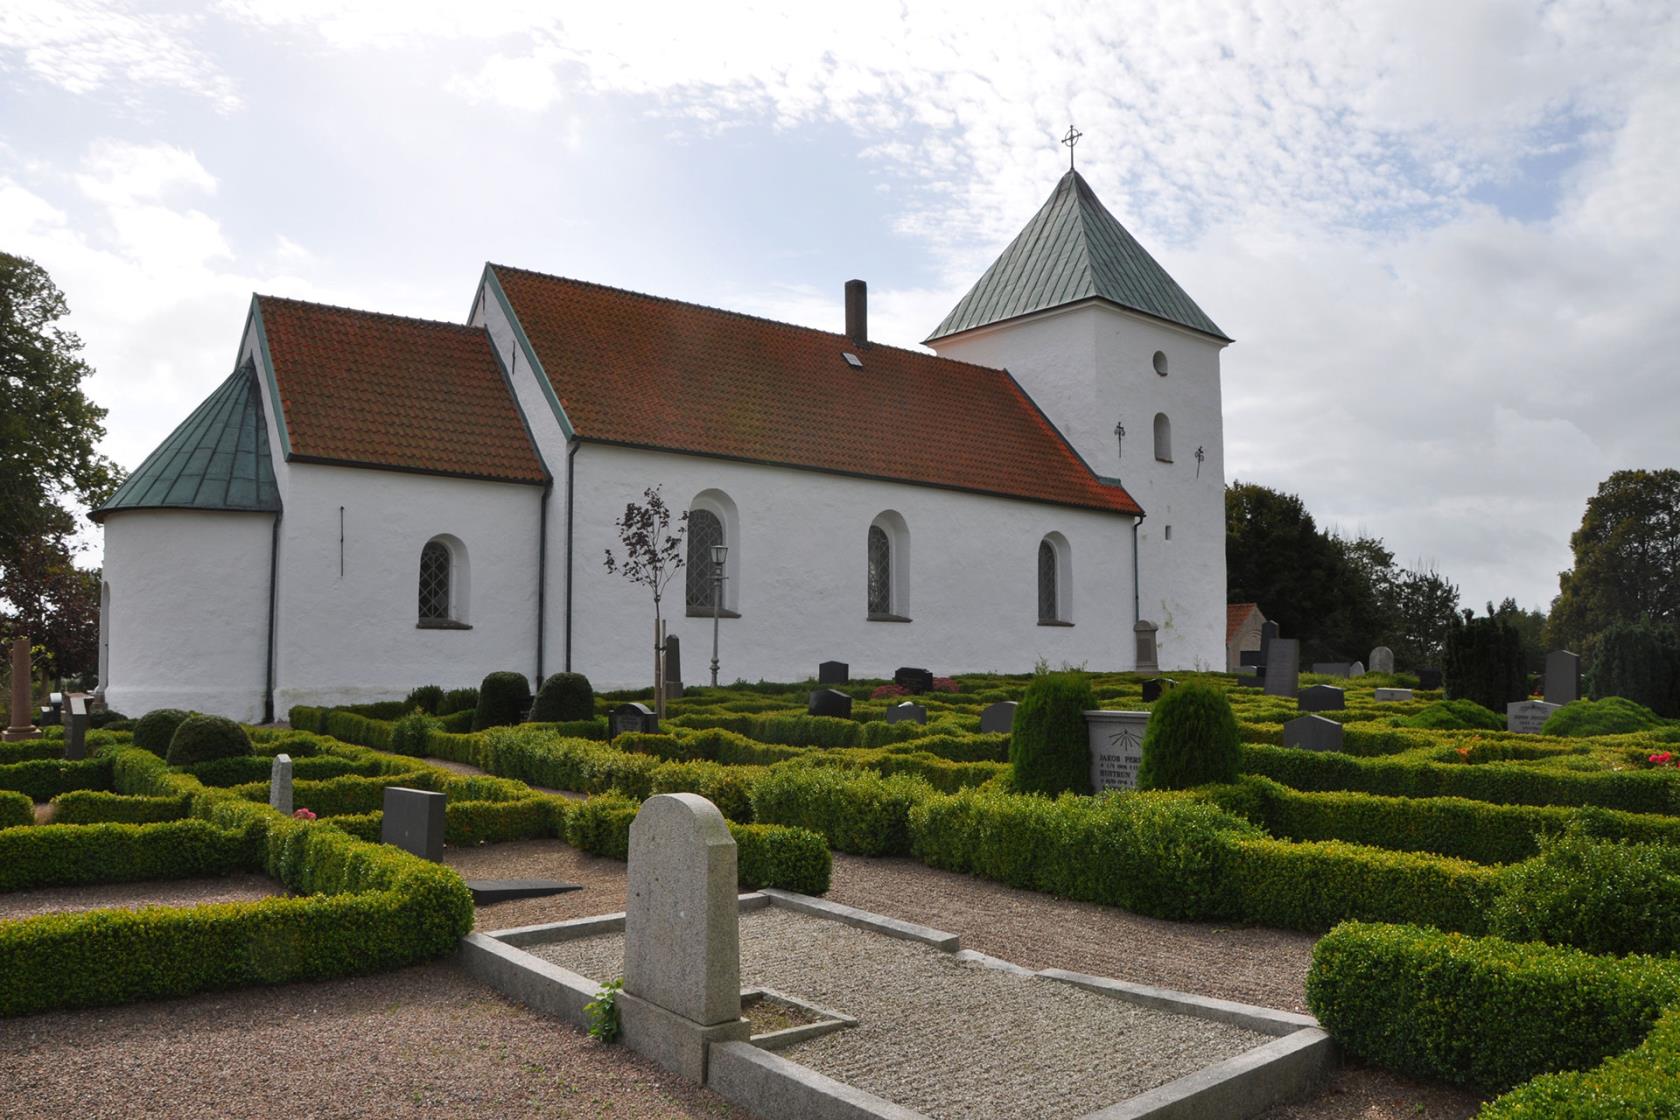 Sövestad kyrka är en vitputsad 1100-talskyrka som ligger längs riksväg 13 strax utanför Ystad.